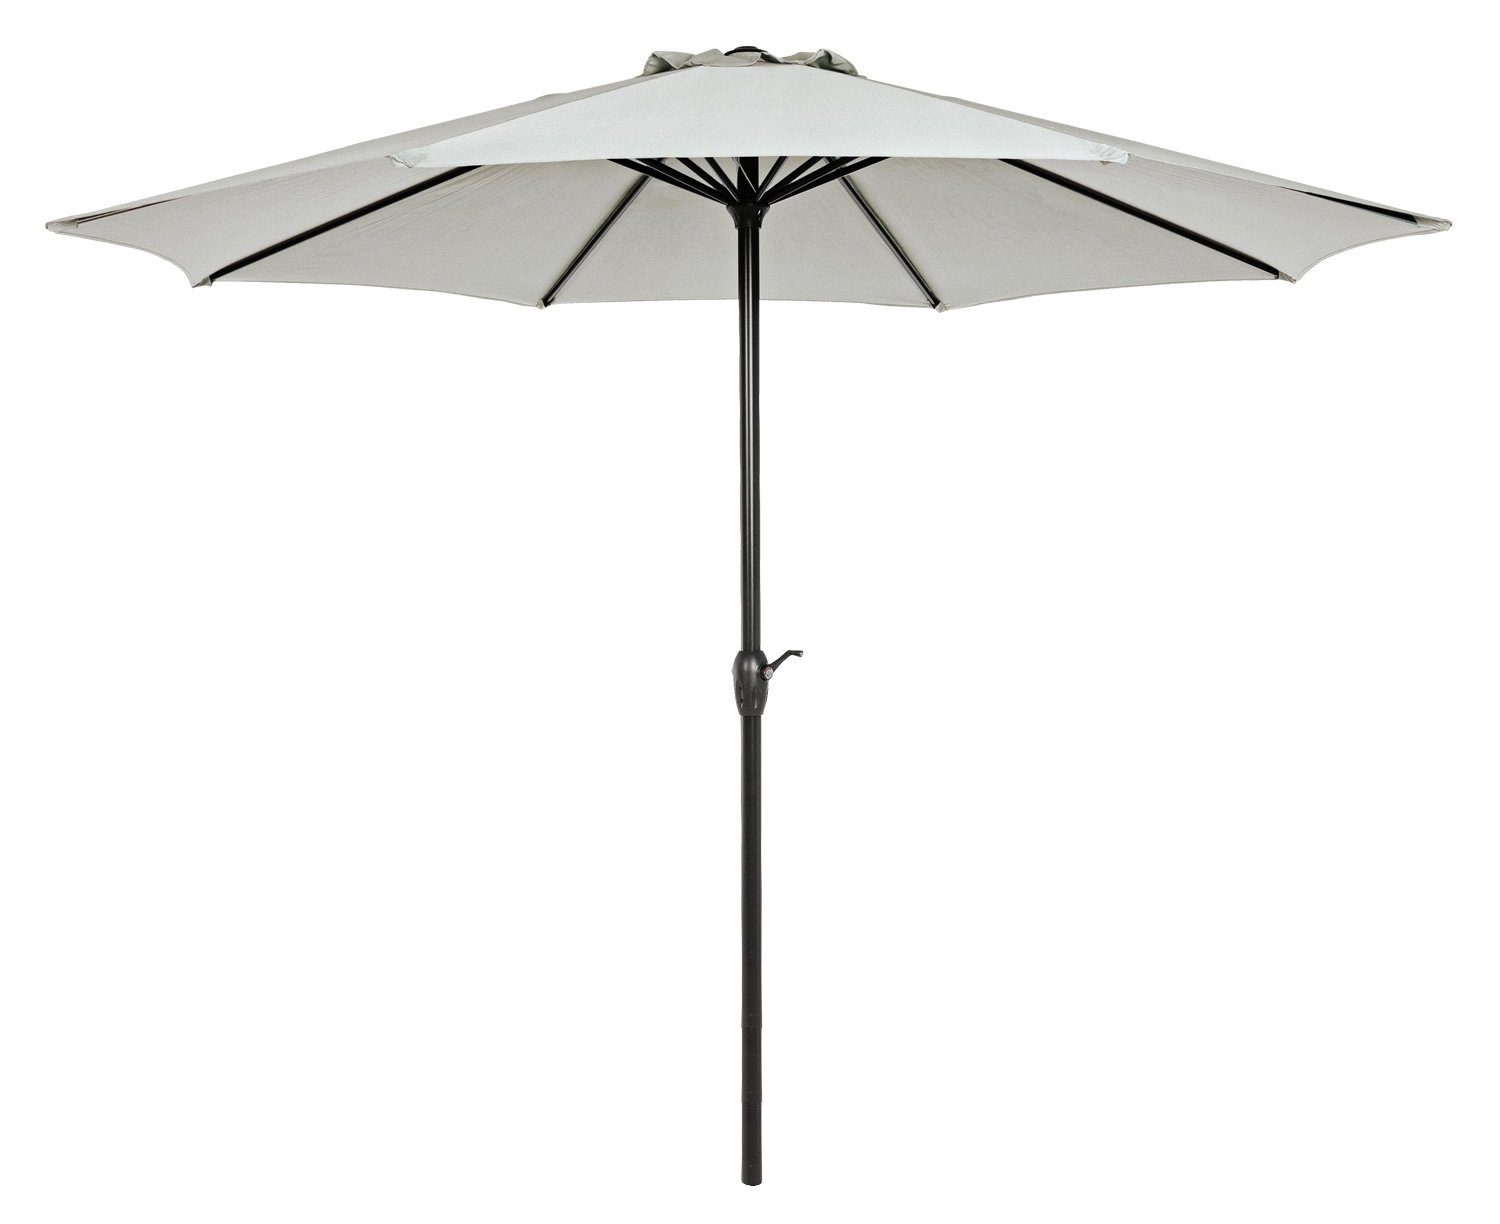 Bizzotto Sonnenschirm KALIFE, Grau, Ø 300 cm, Aluminium, Kippfunktion, Polyesterschirm, ohne Schirmständer